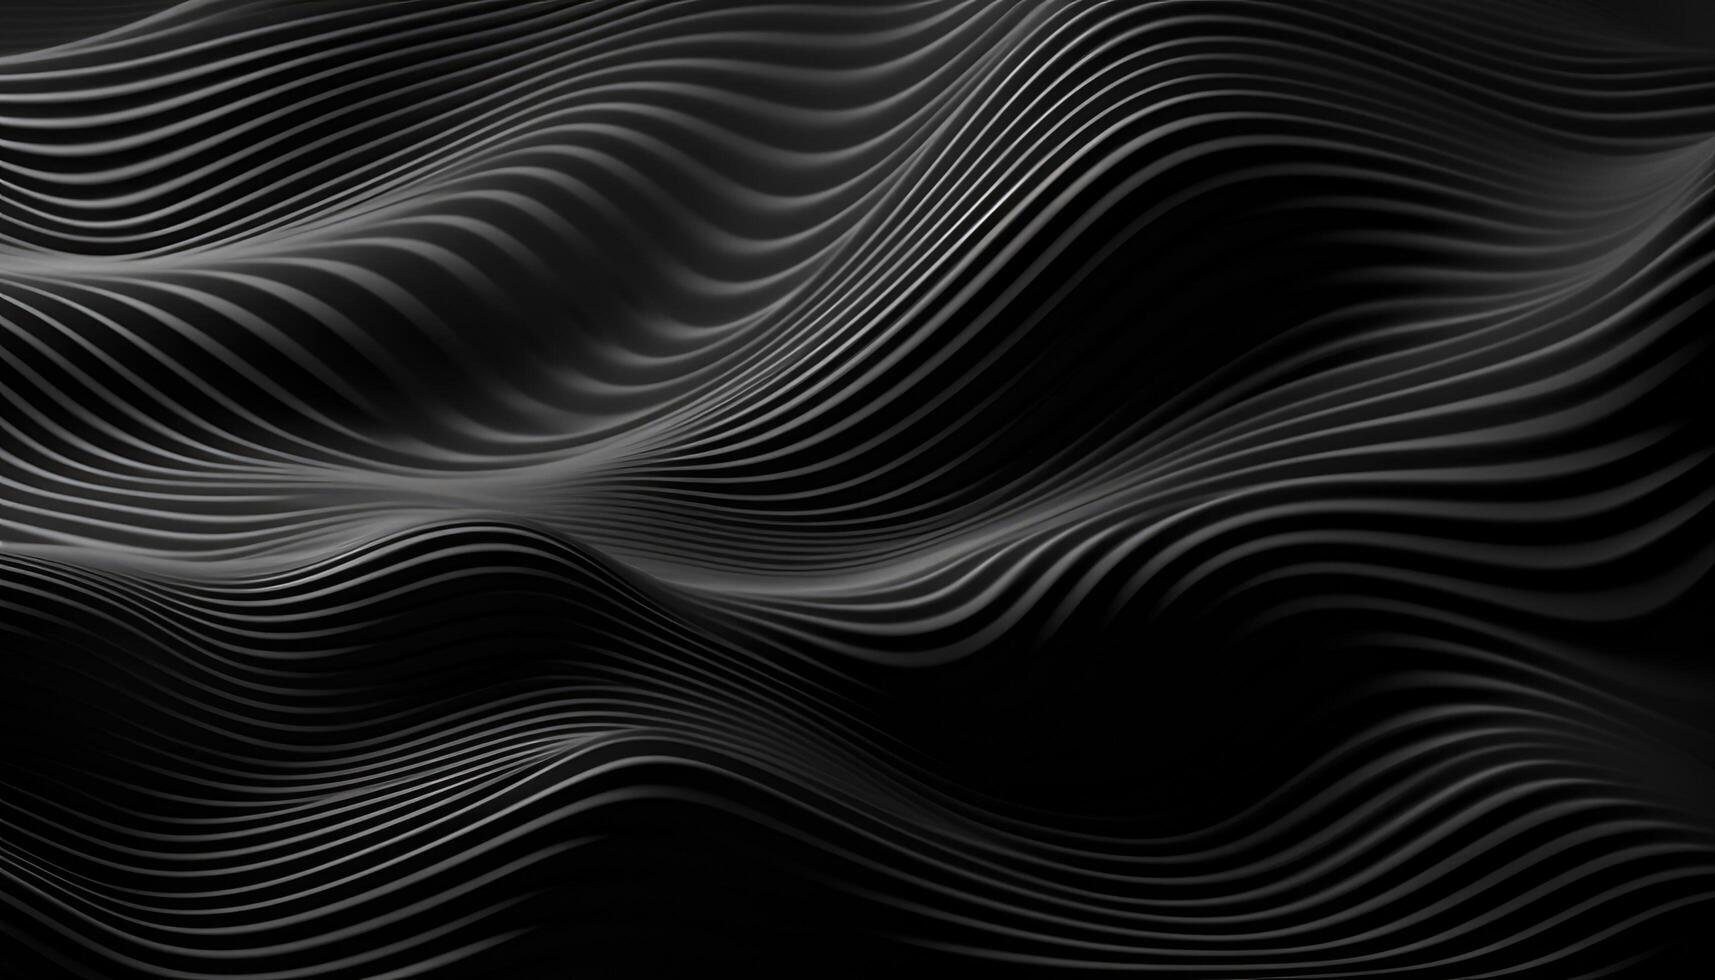 vågig svart texturerad metallisk 3d bakgrund foto